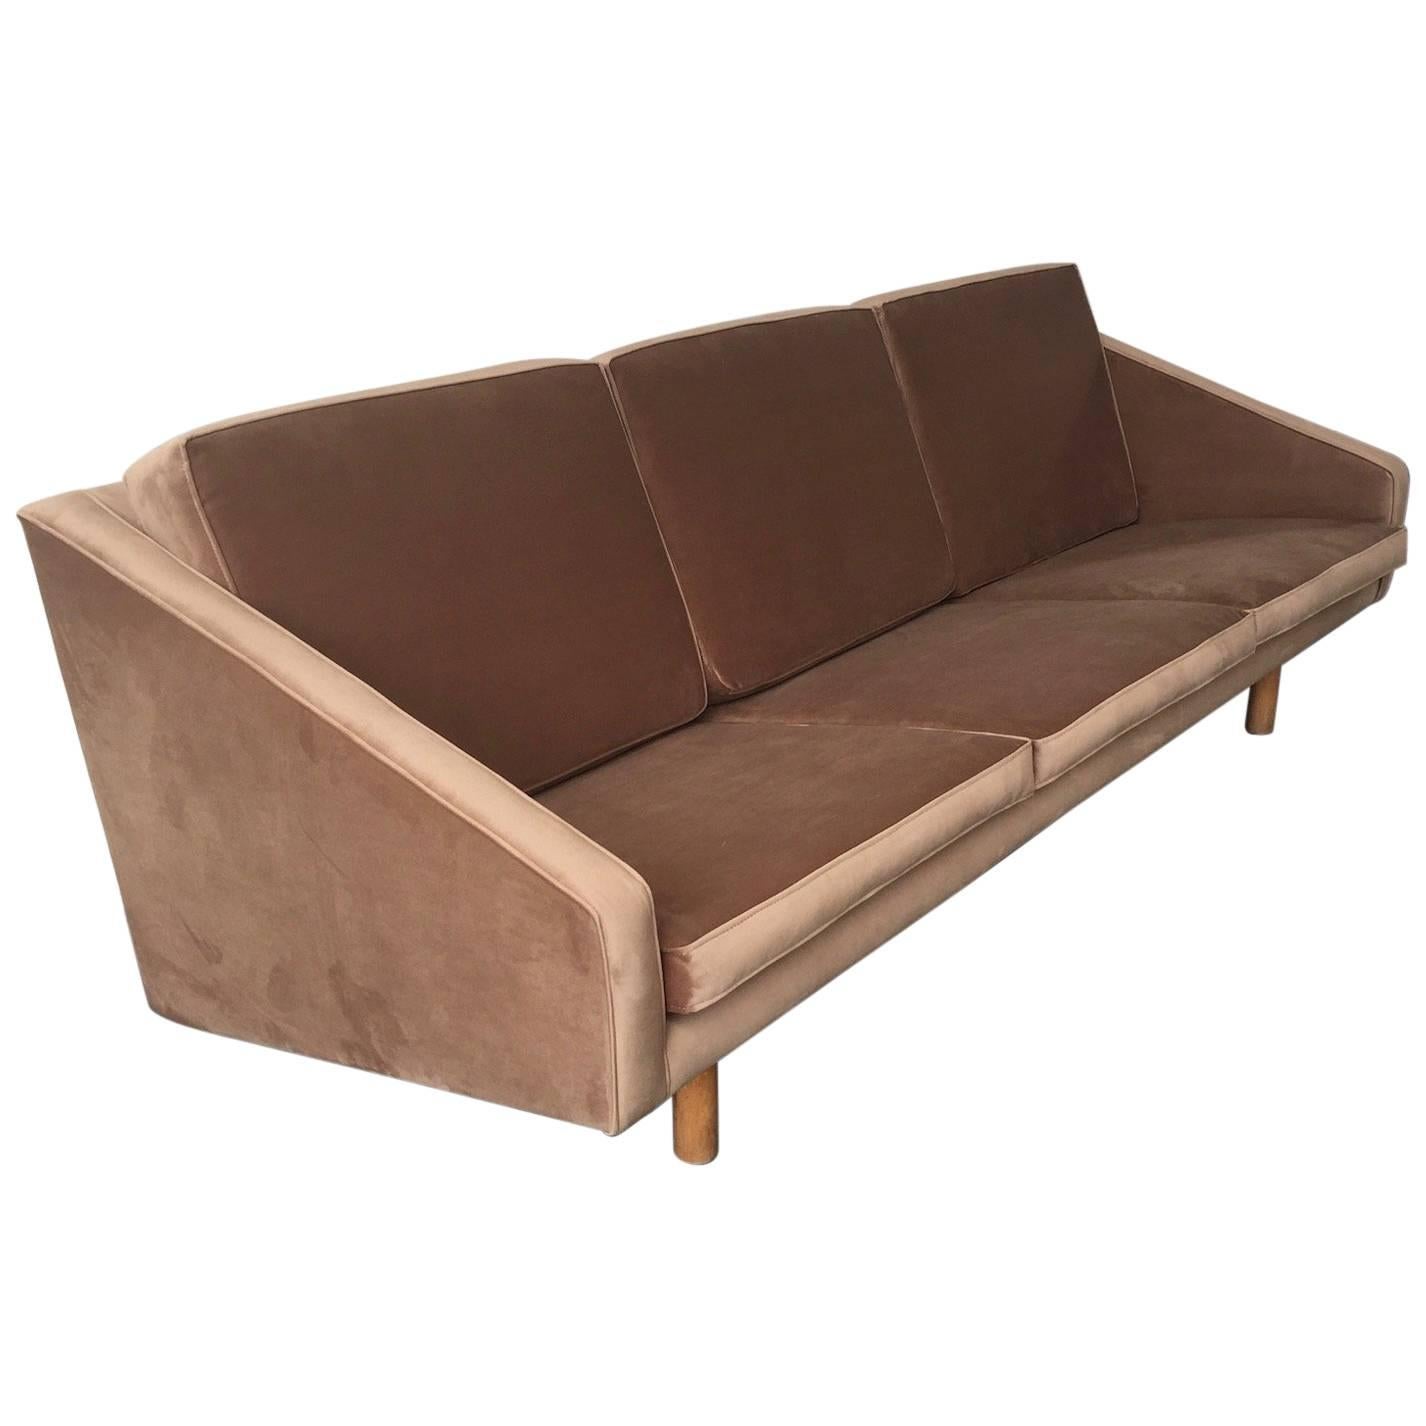 Ein wunderbares italienisches Sofa, Gio Ponti zugeschrieben und komplett neu gepolstert